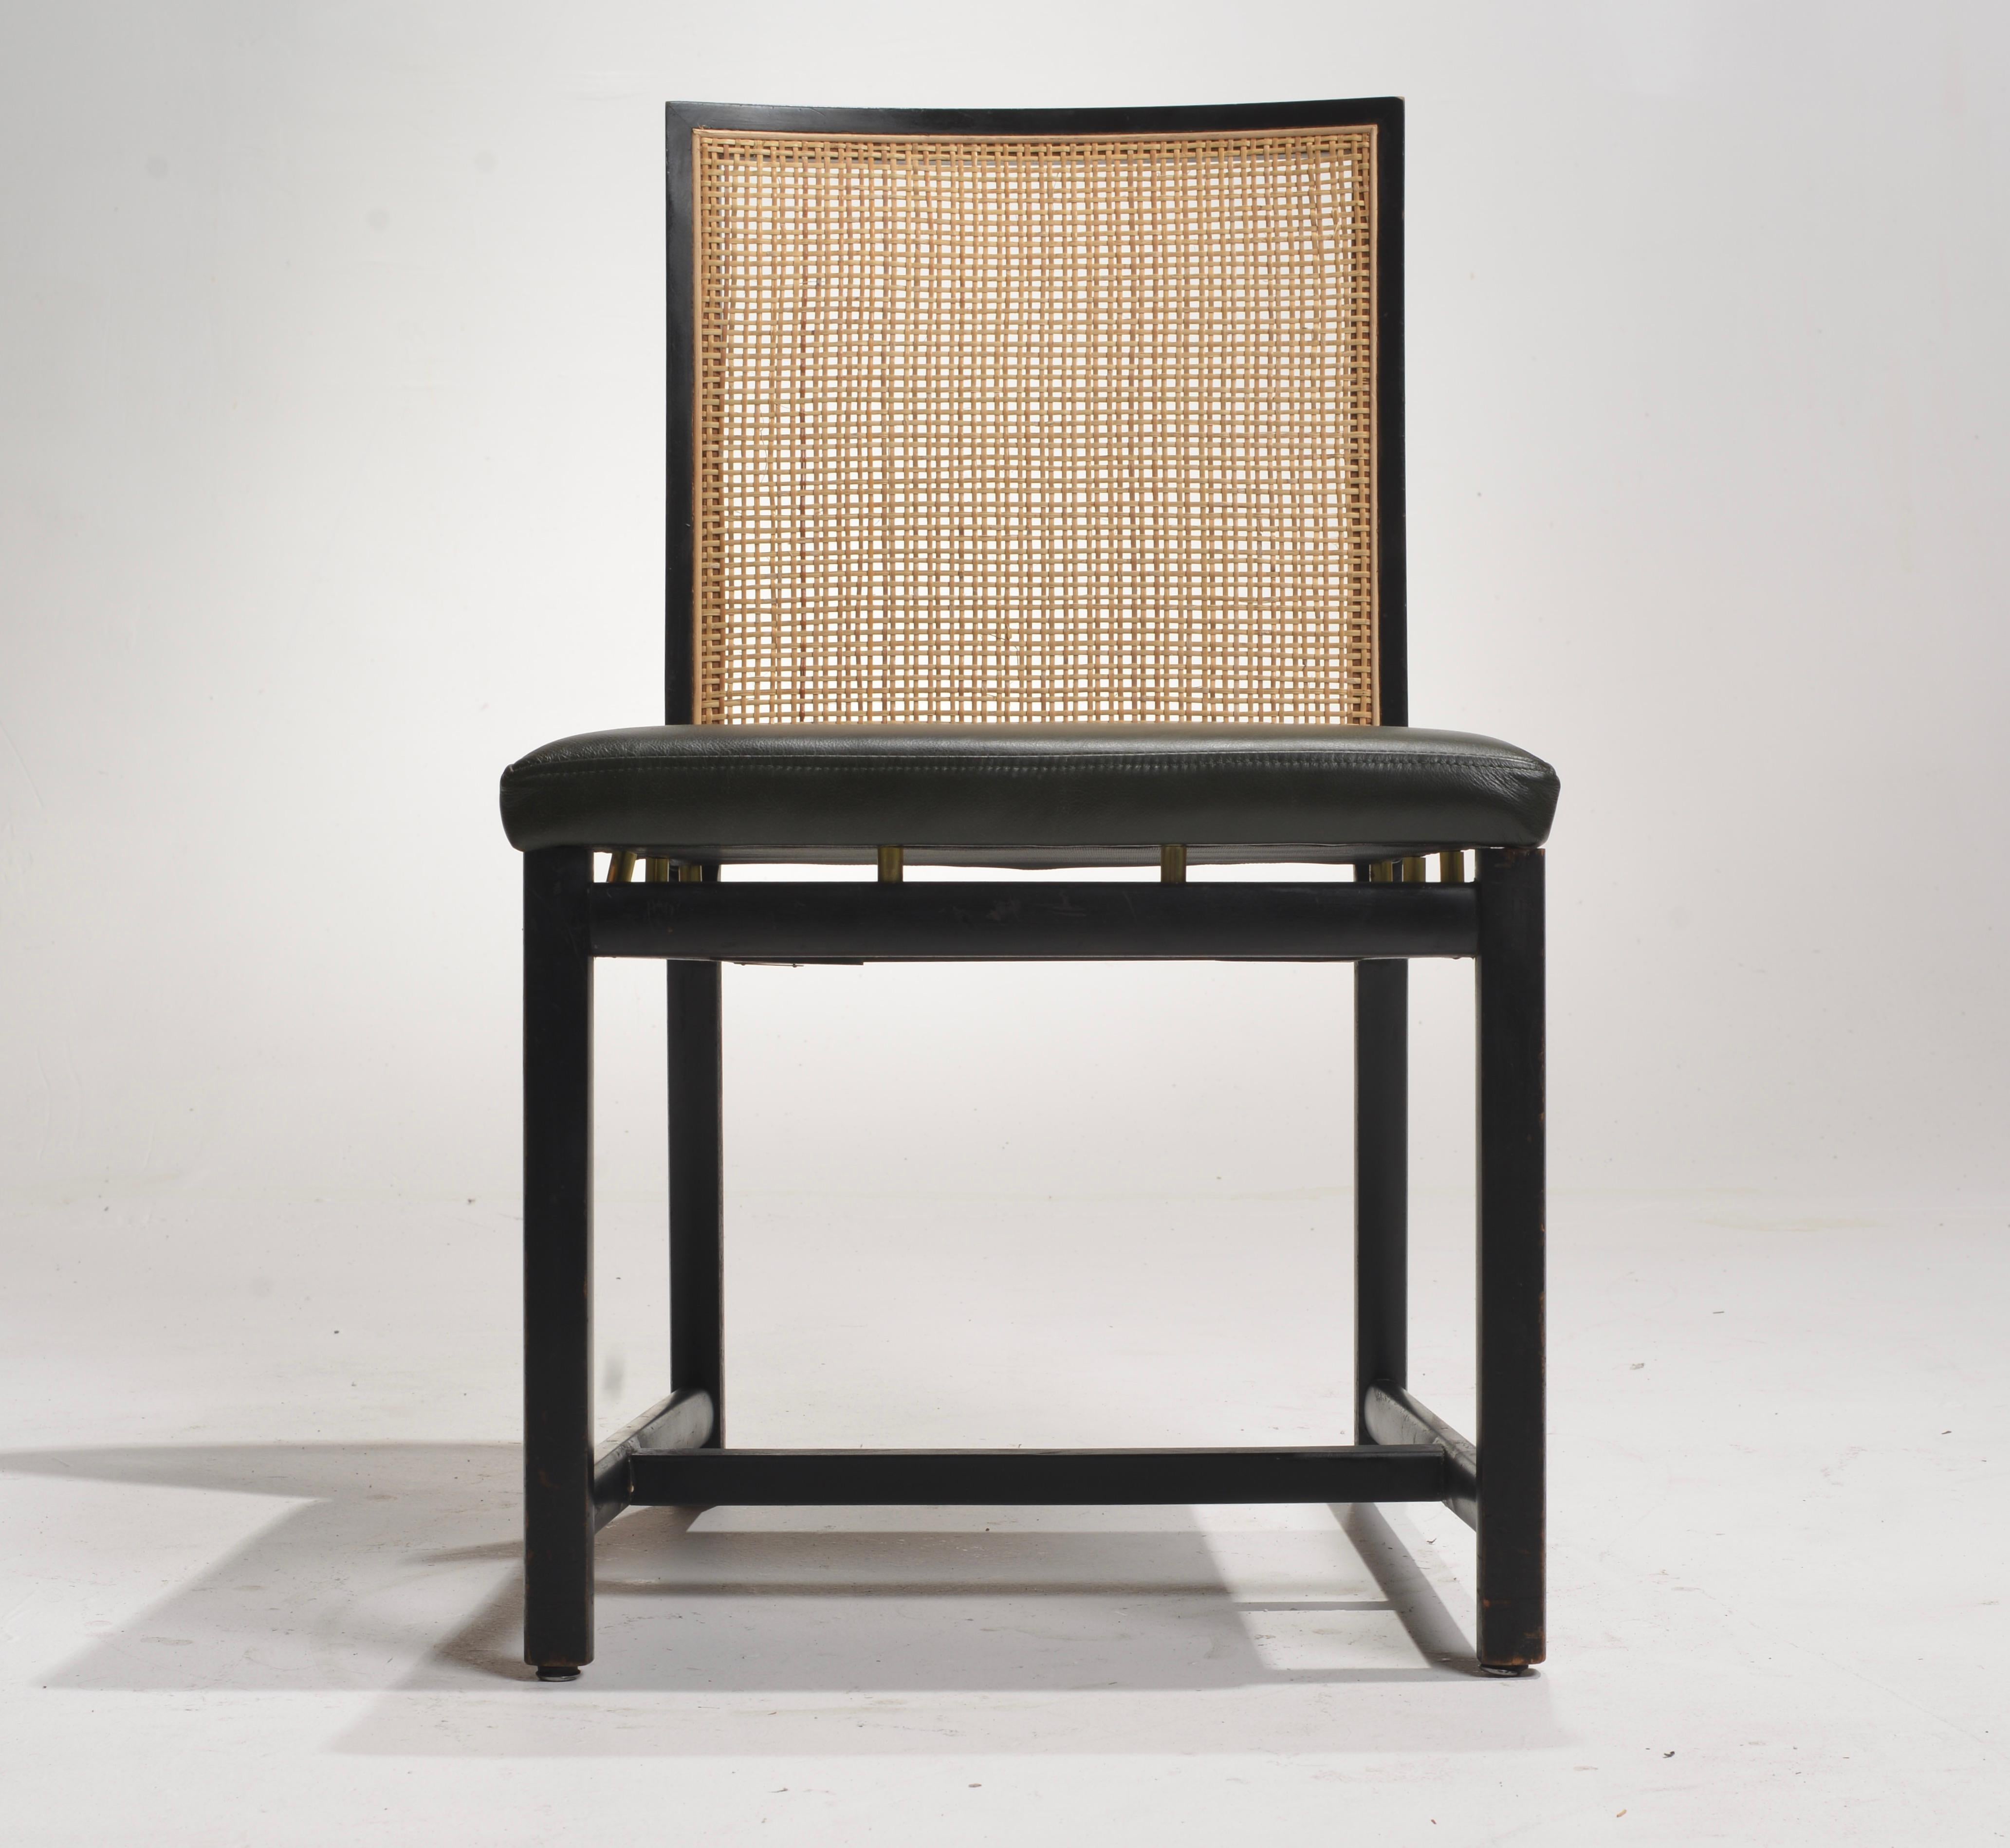 Les chaises de salle à manger à dossier canné en laque noire de Michael Taylor pour Baker sont dotées d'une élégante finition en laque noire. Les dossiers en rotin marient harmonieusement l'artisanat traditionnel et le design contemporain.